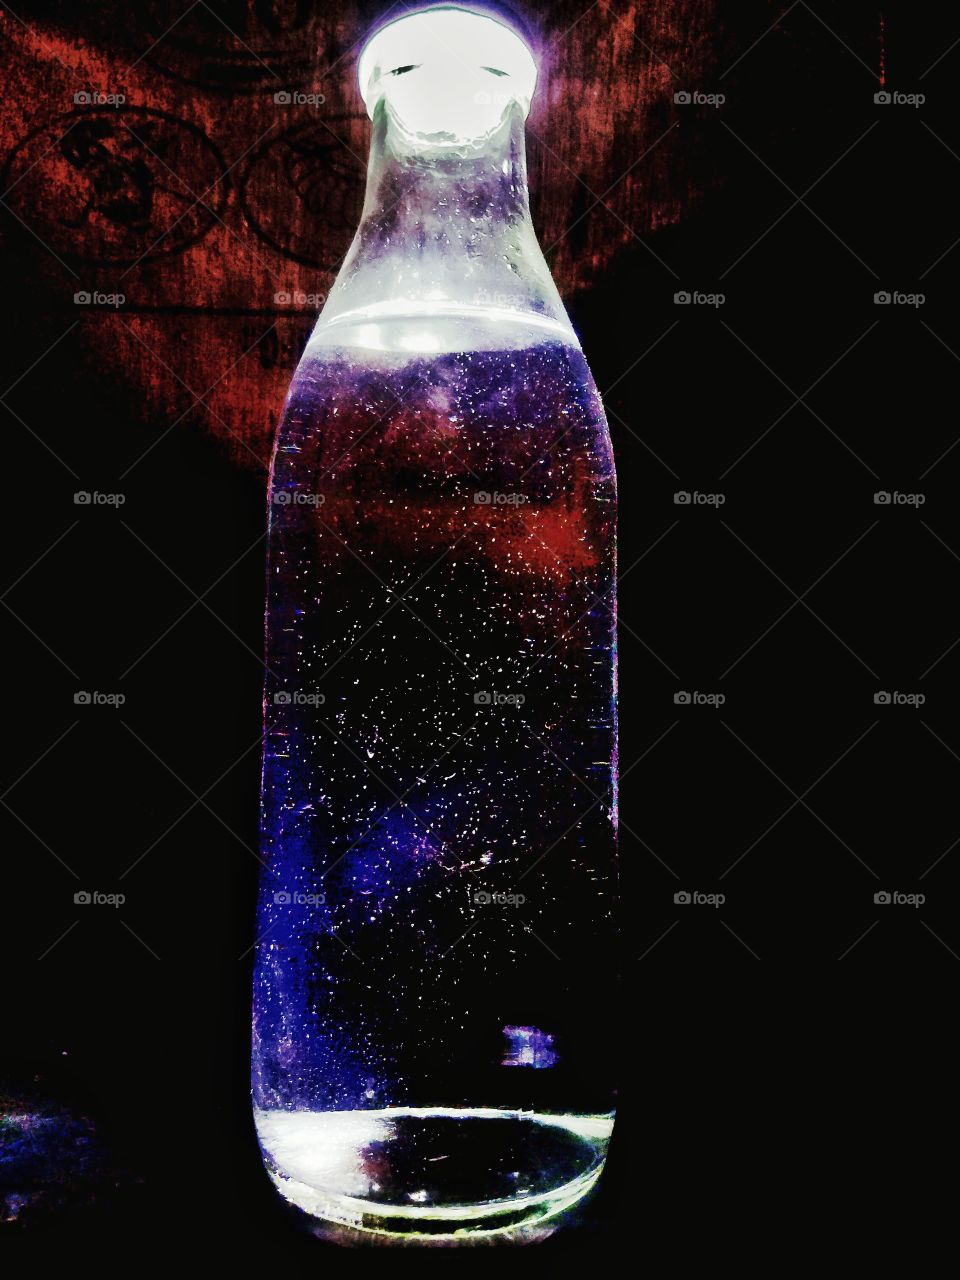 galaxy in a bottle